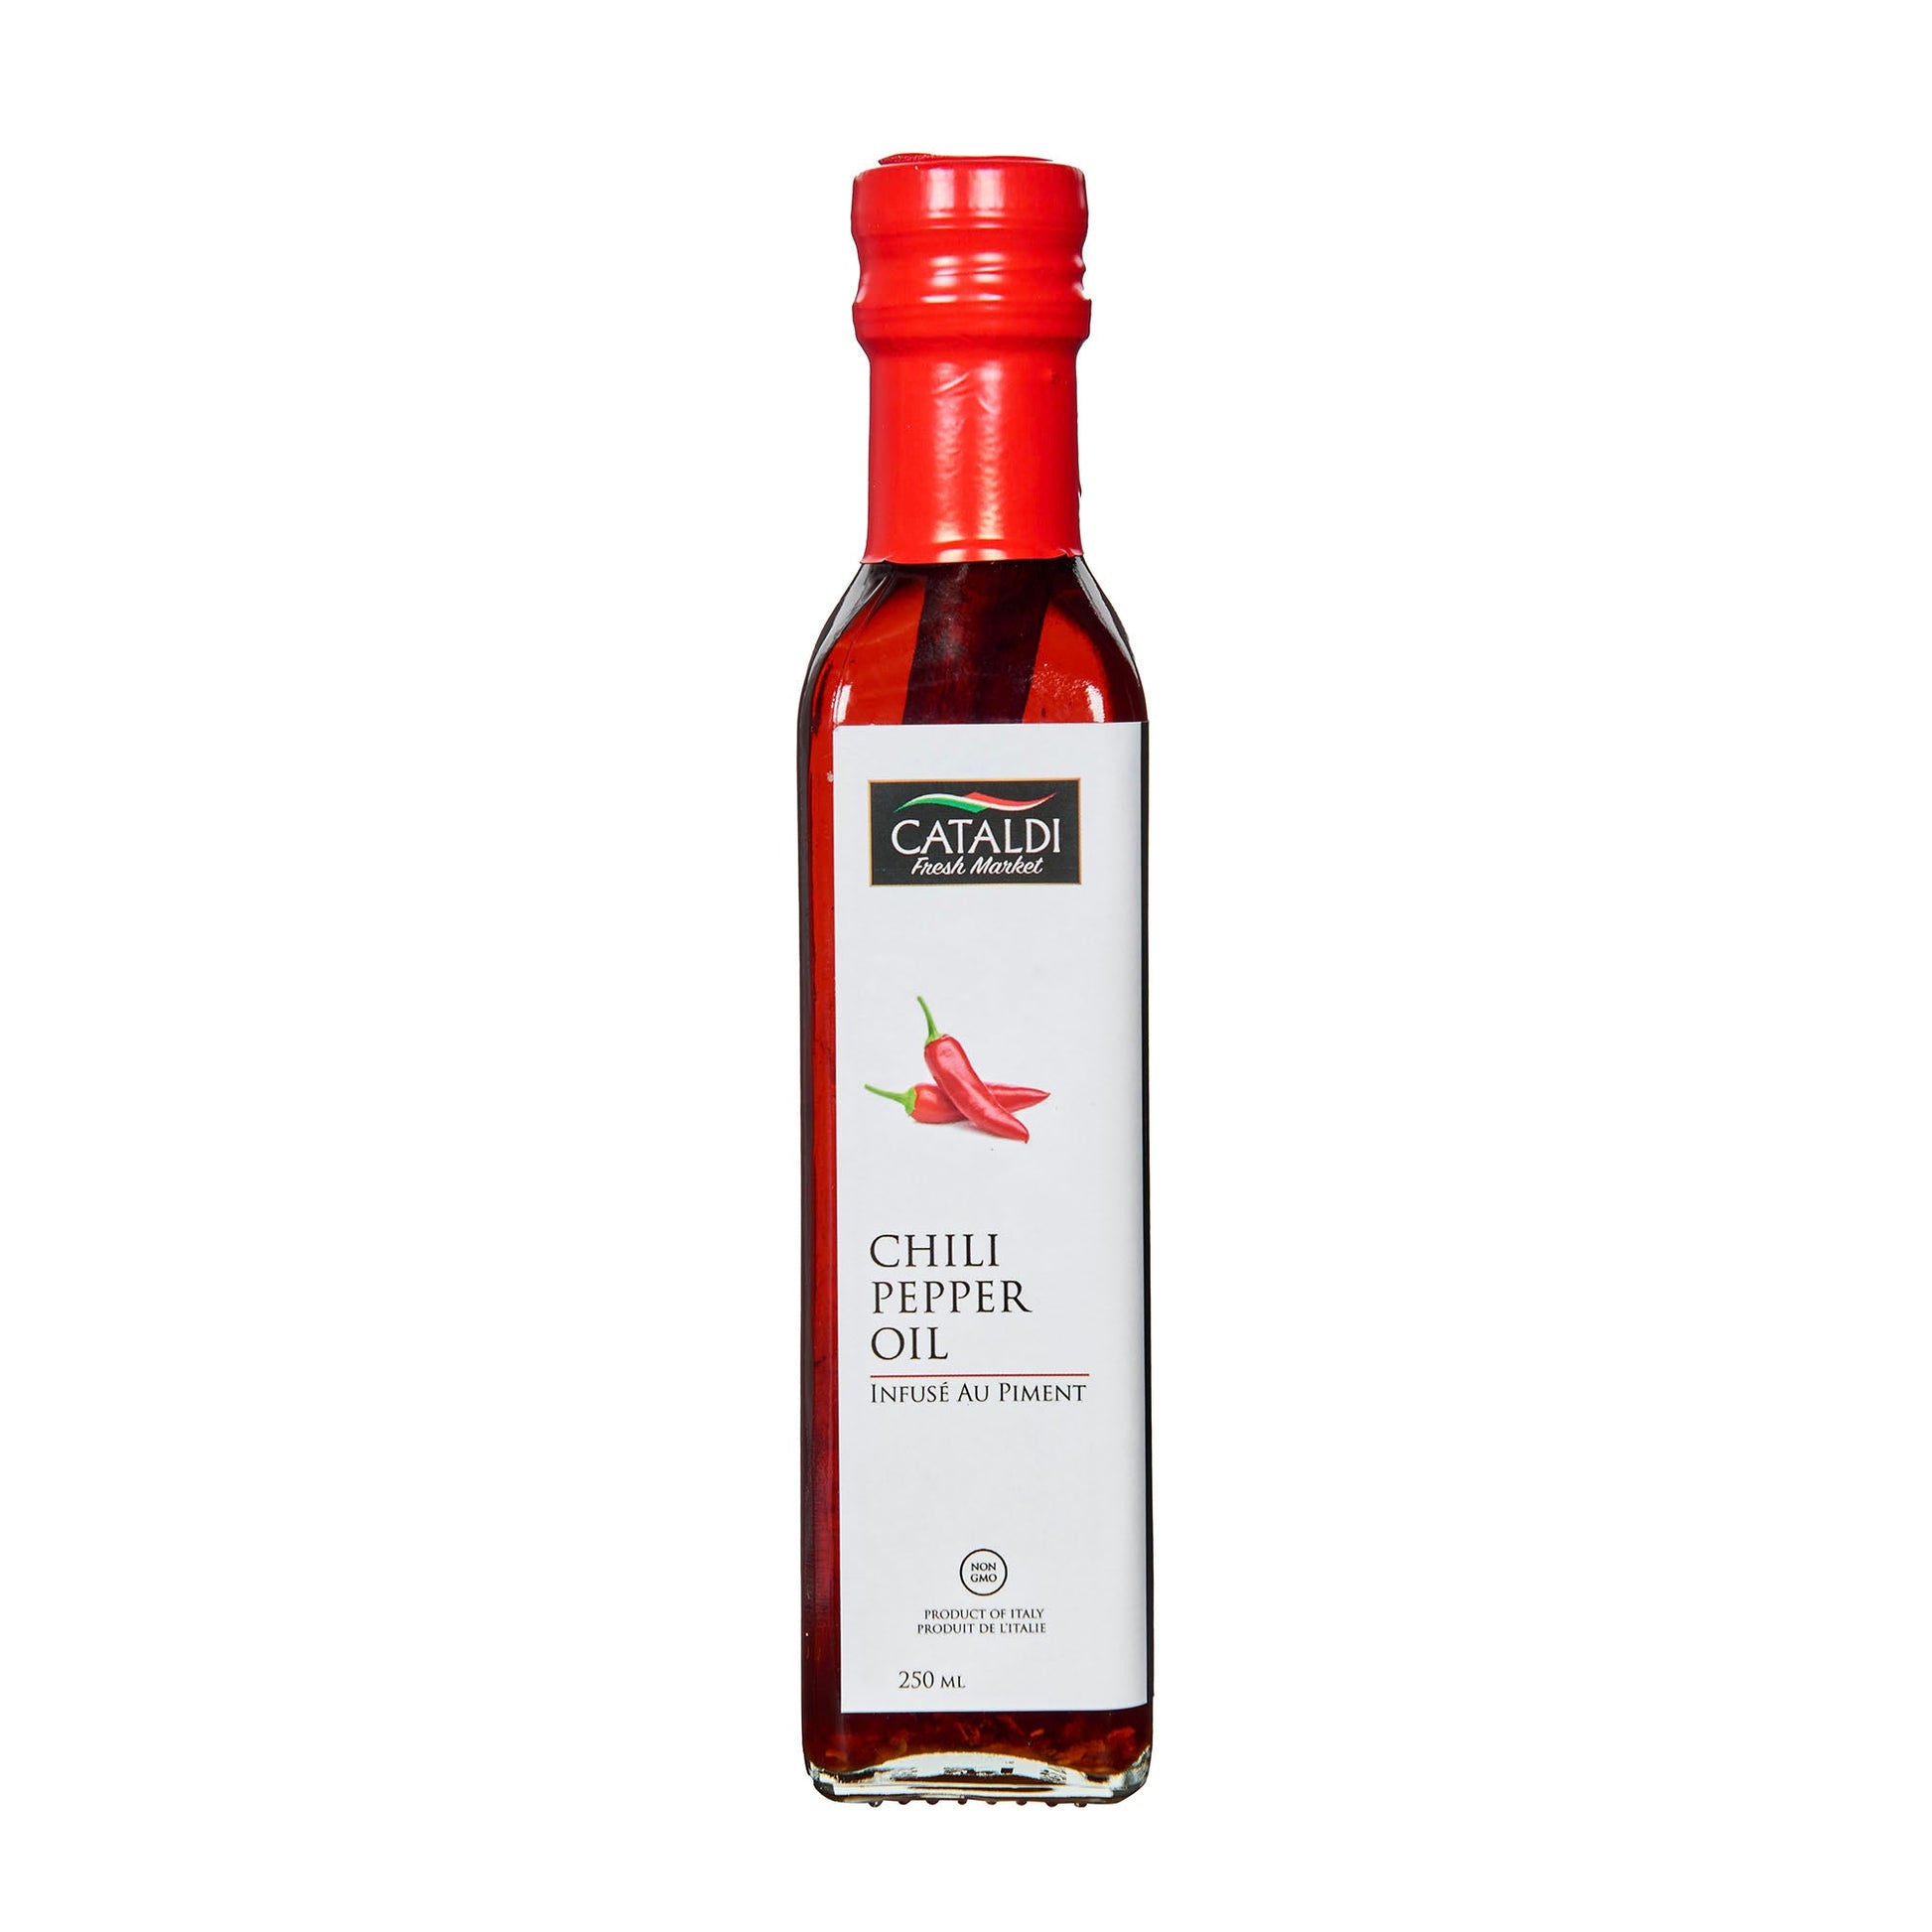 Cataldi Oil Chili Pepper 250Ml